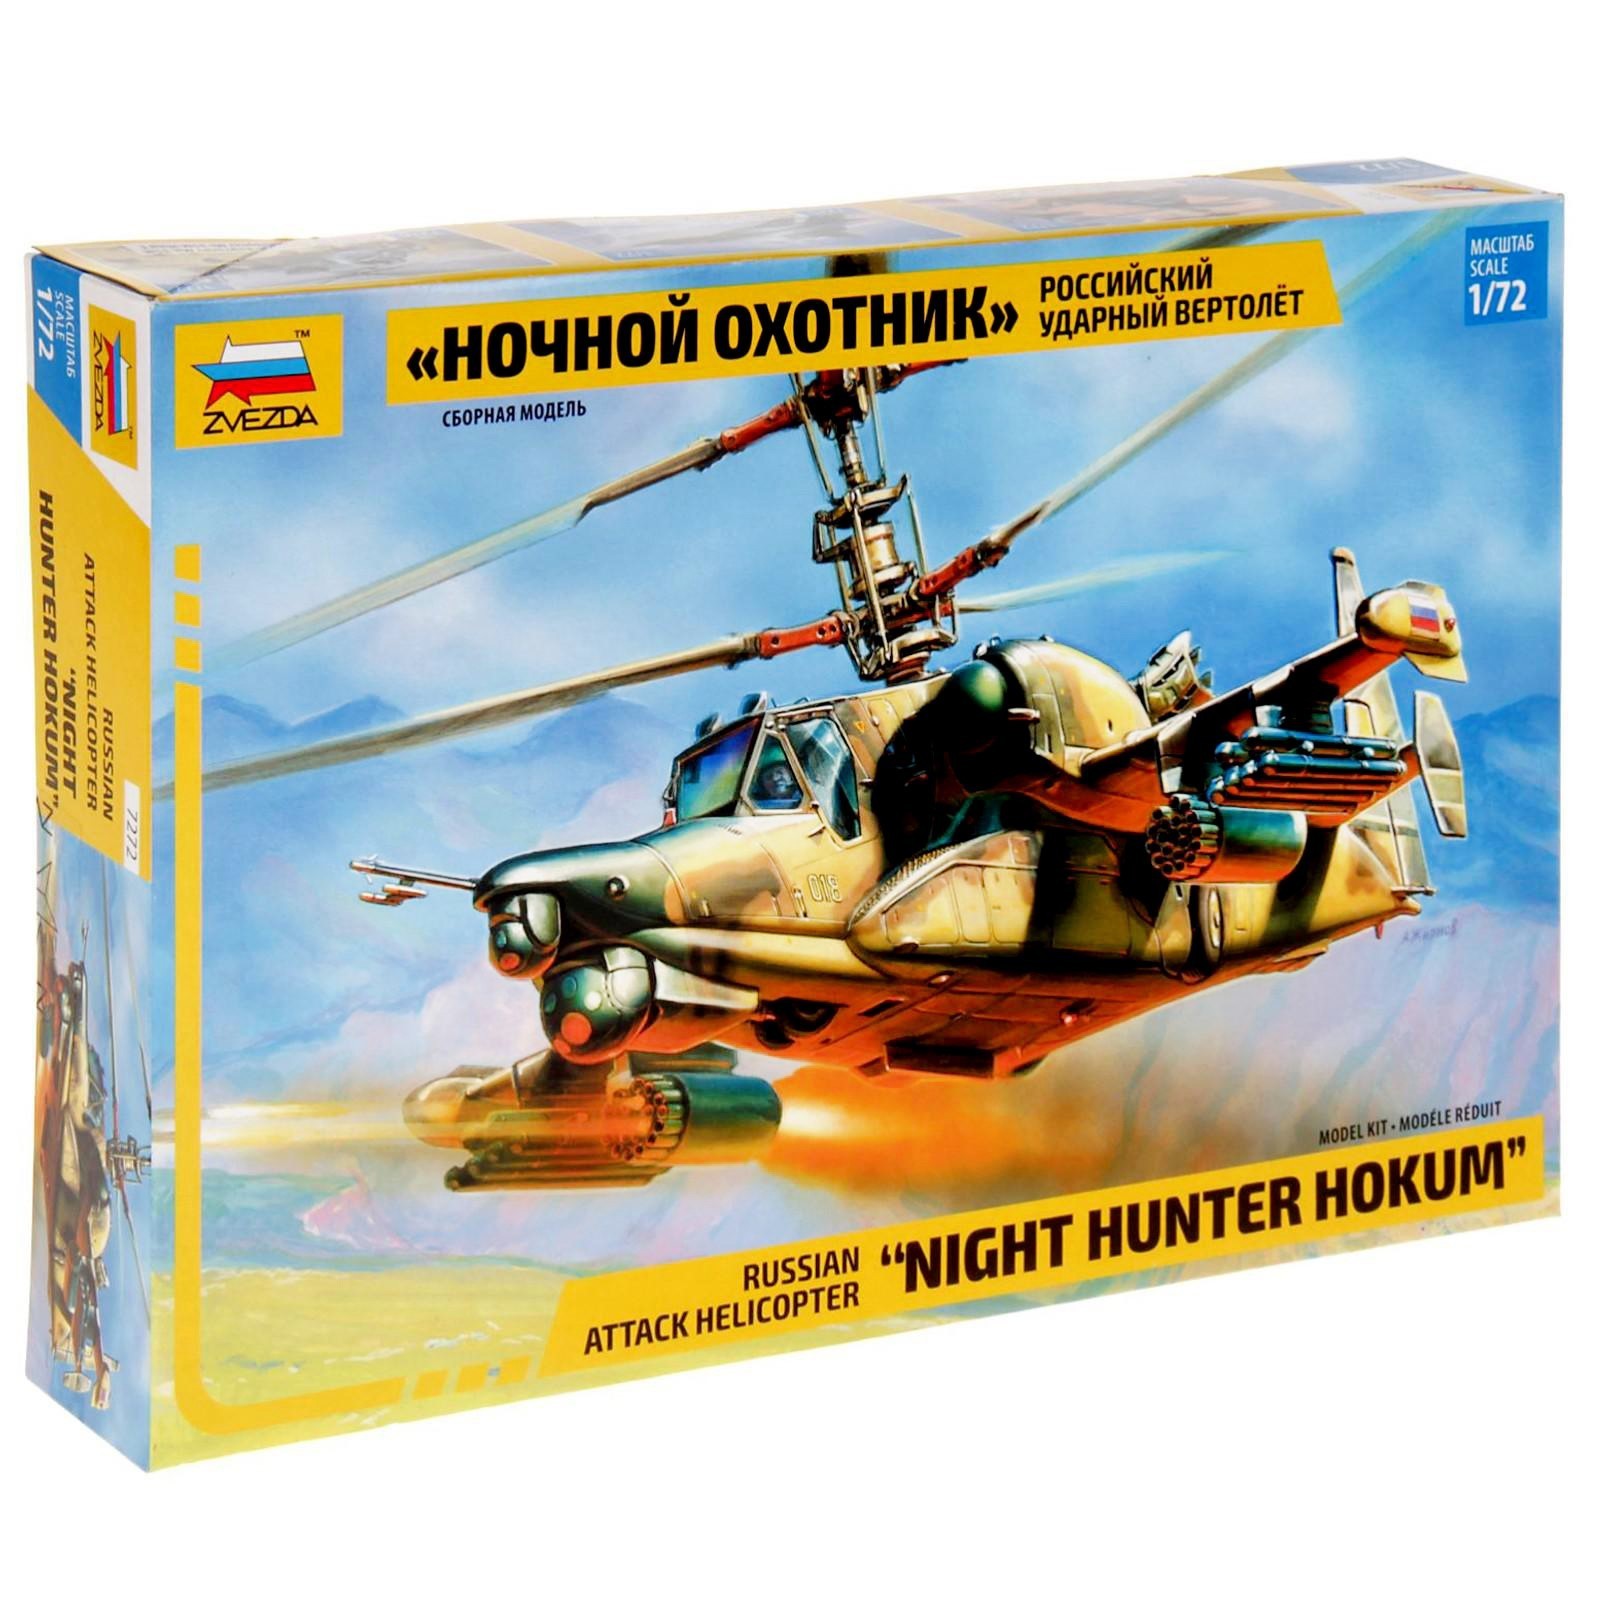 Набор сборной модели российский ударный вертолет ночной охотник (1:72)